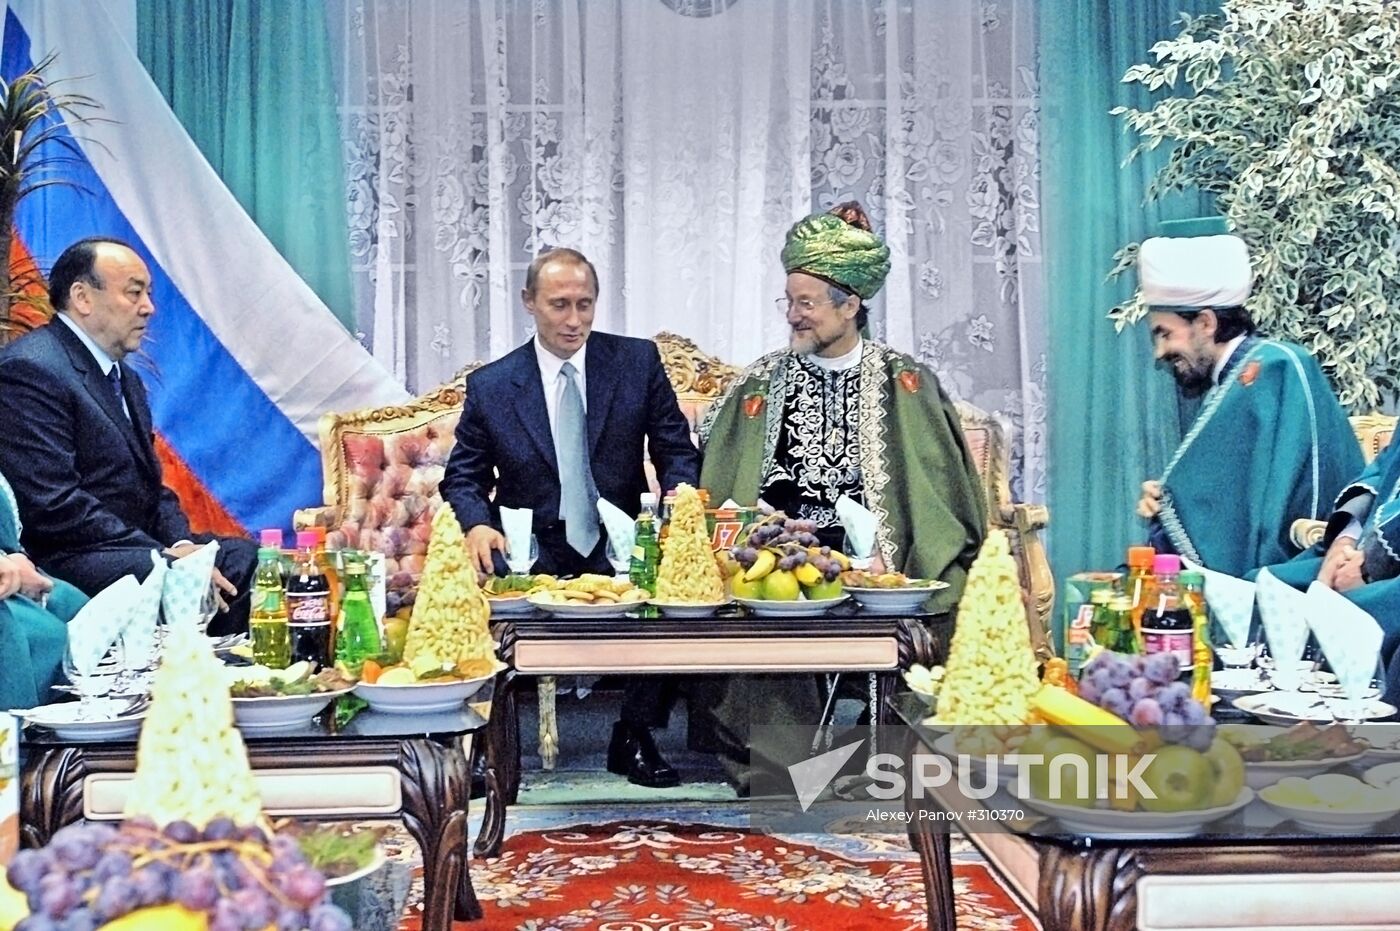 Vladimir Putin, Talgat Tadzhuddin and Murtaza Rakhimov